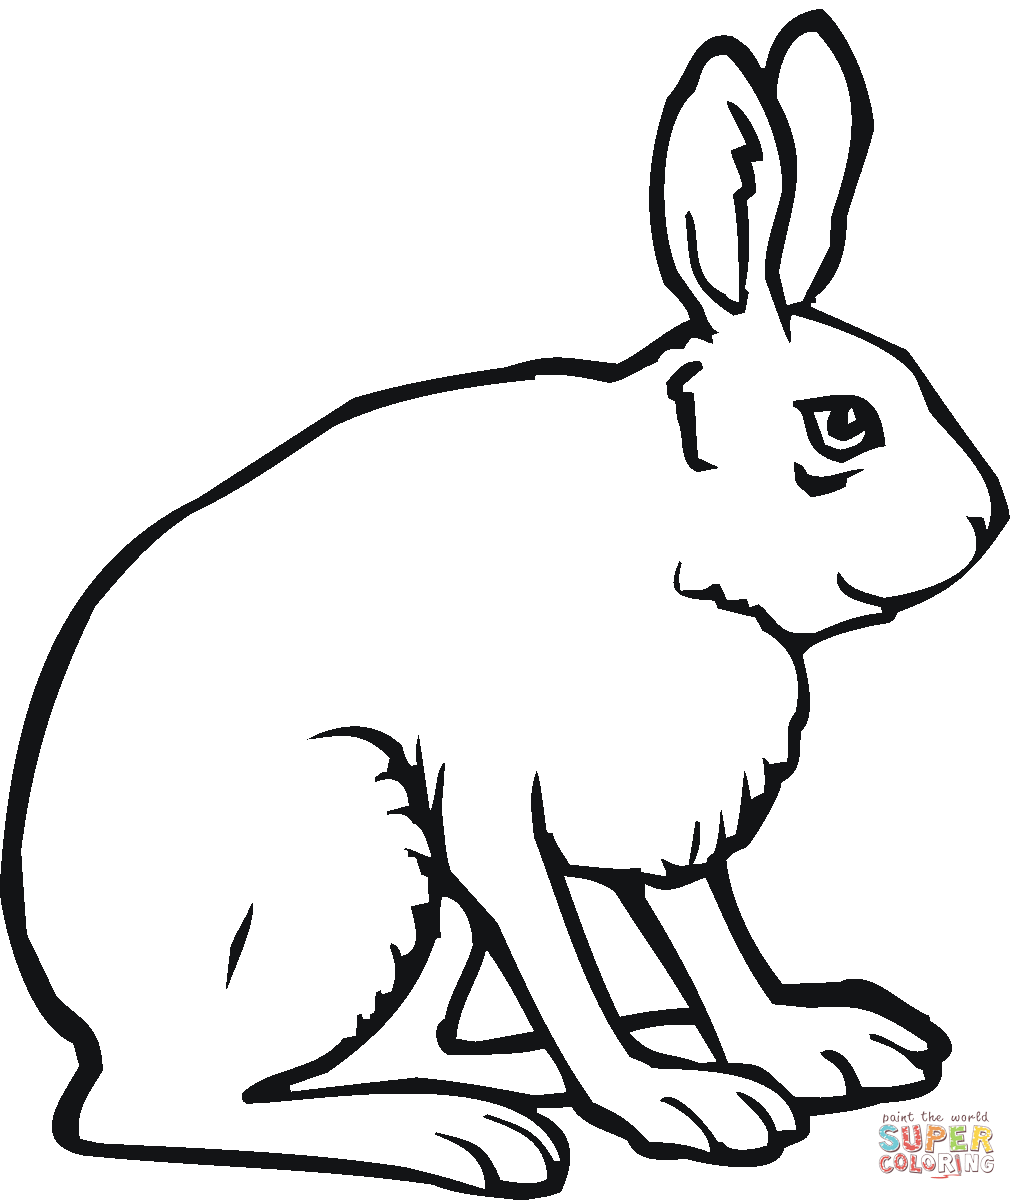 Jack Rabbit coloring #15, Download drawings